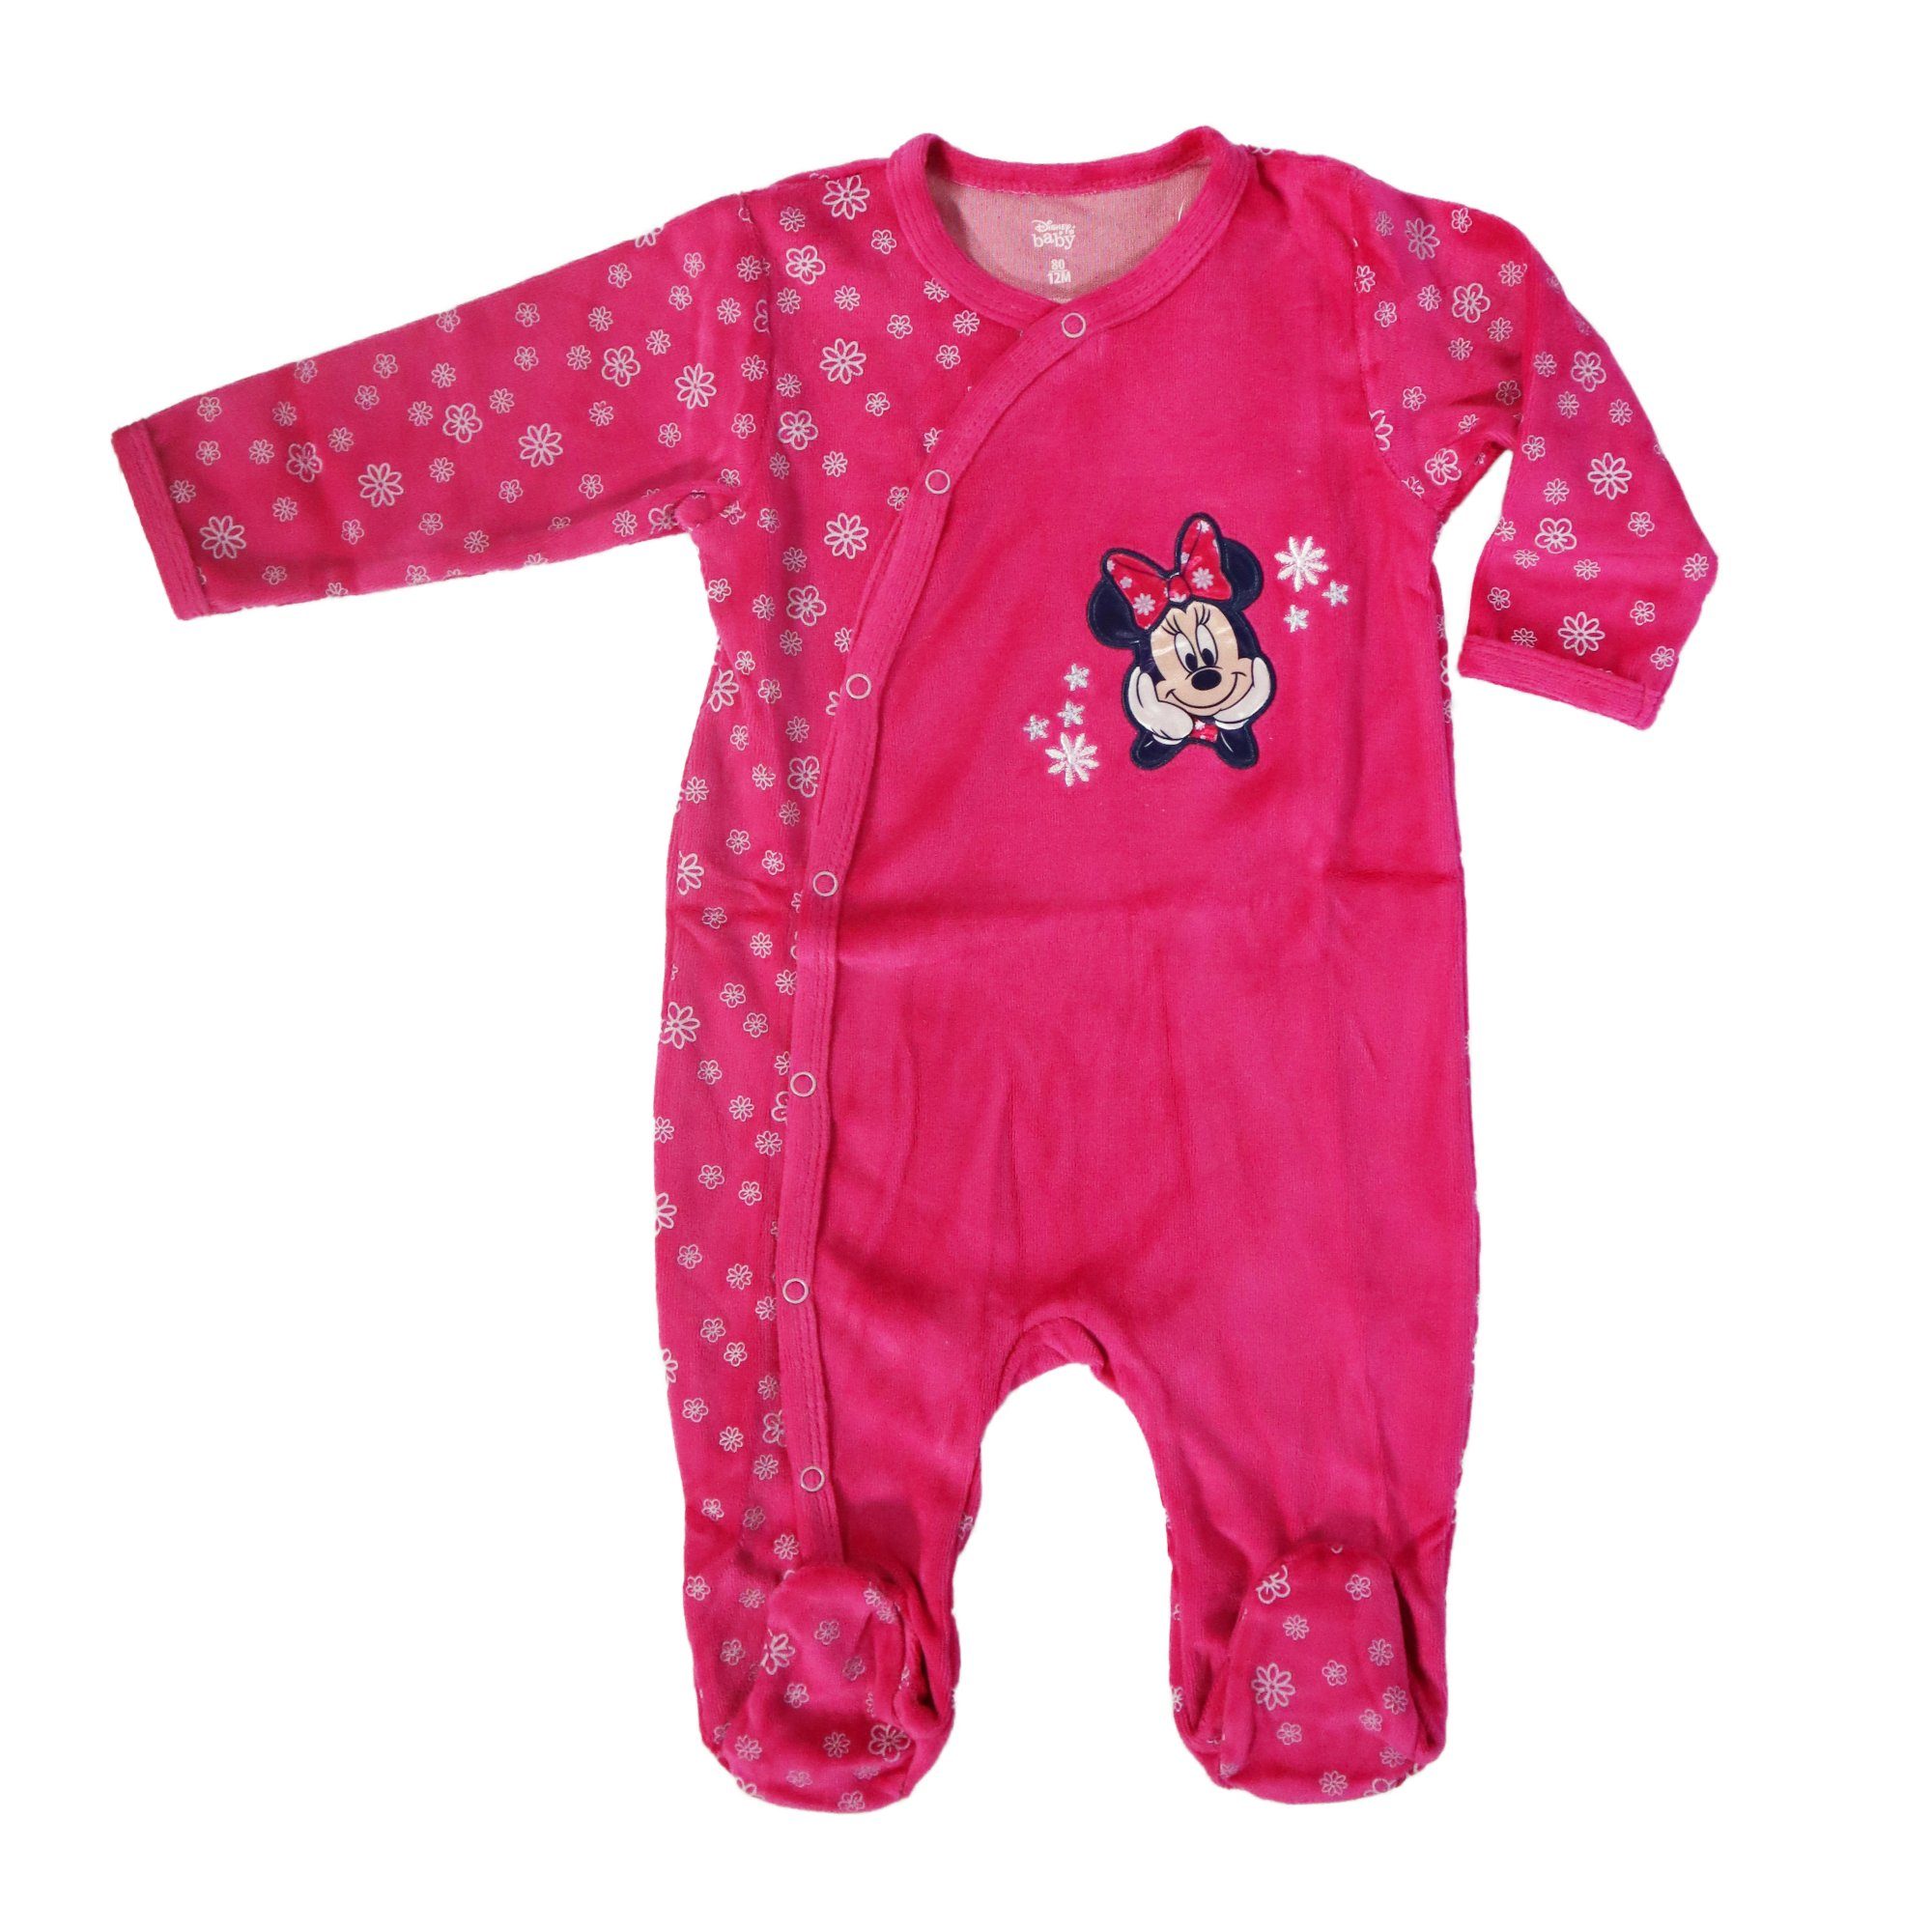 Disney Baby Strampler Disney Minnie Maus Baby Kleinkind Strampler Einteiler Velour Gr. 62 bis 92 Pink